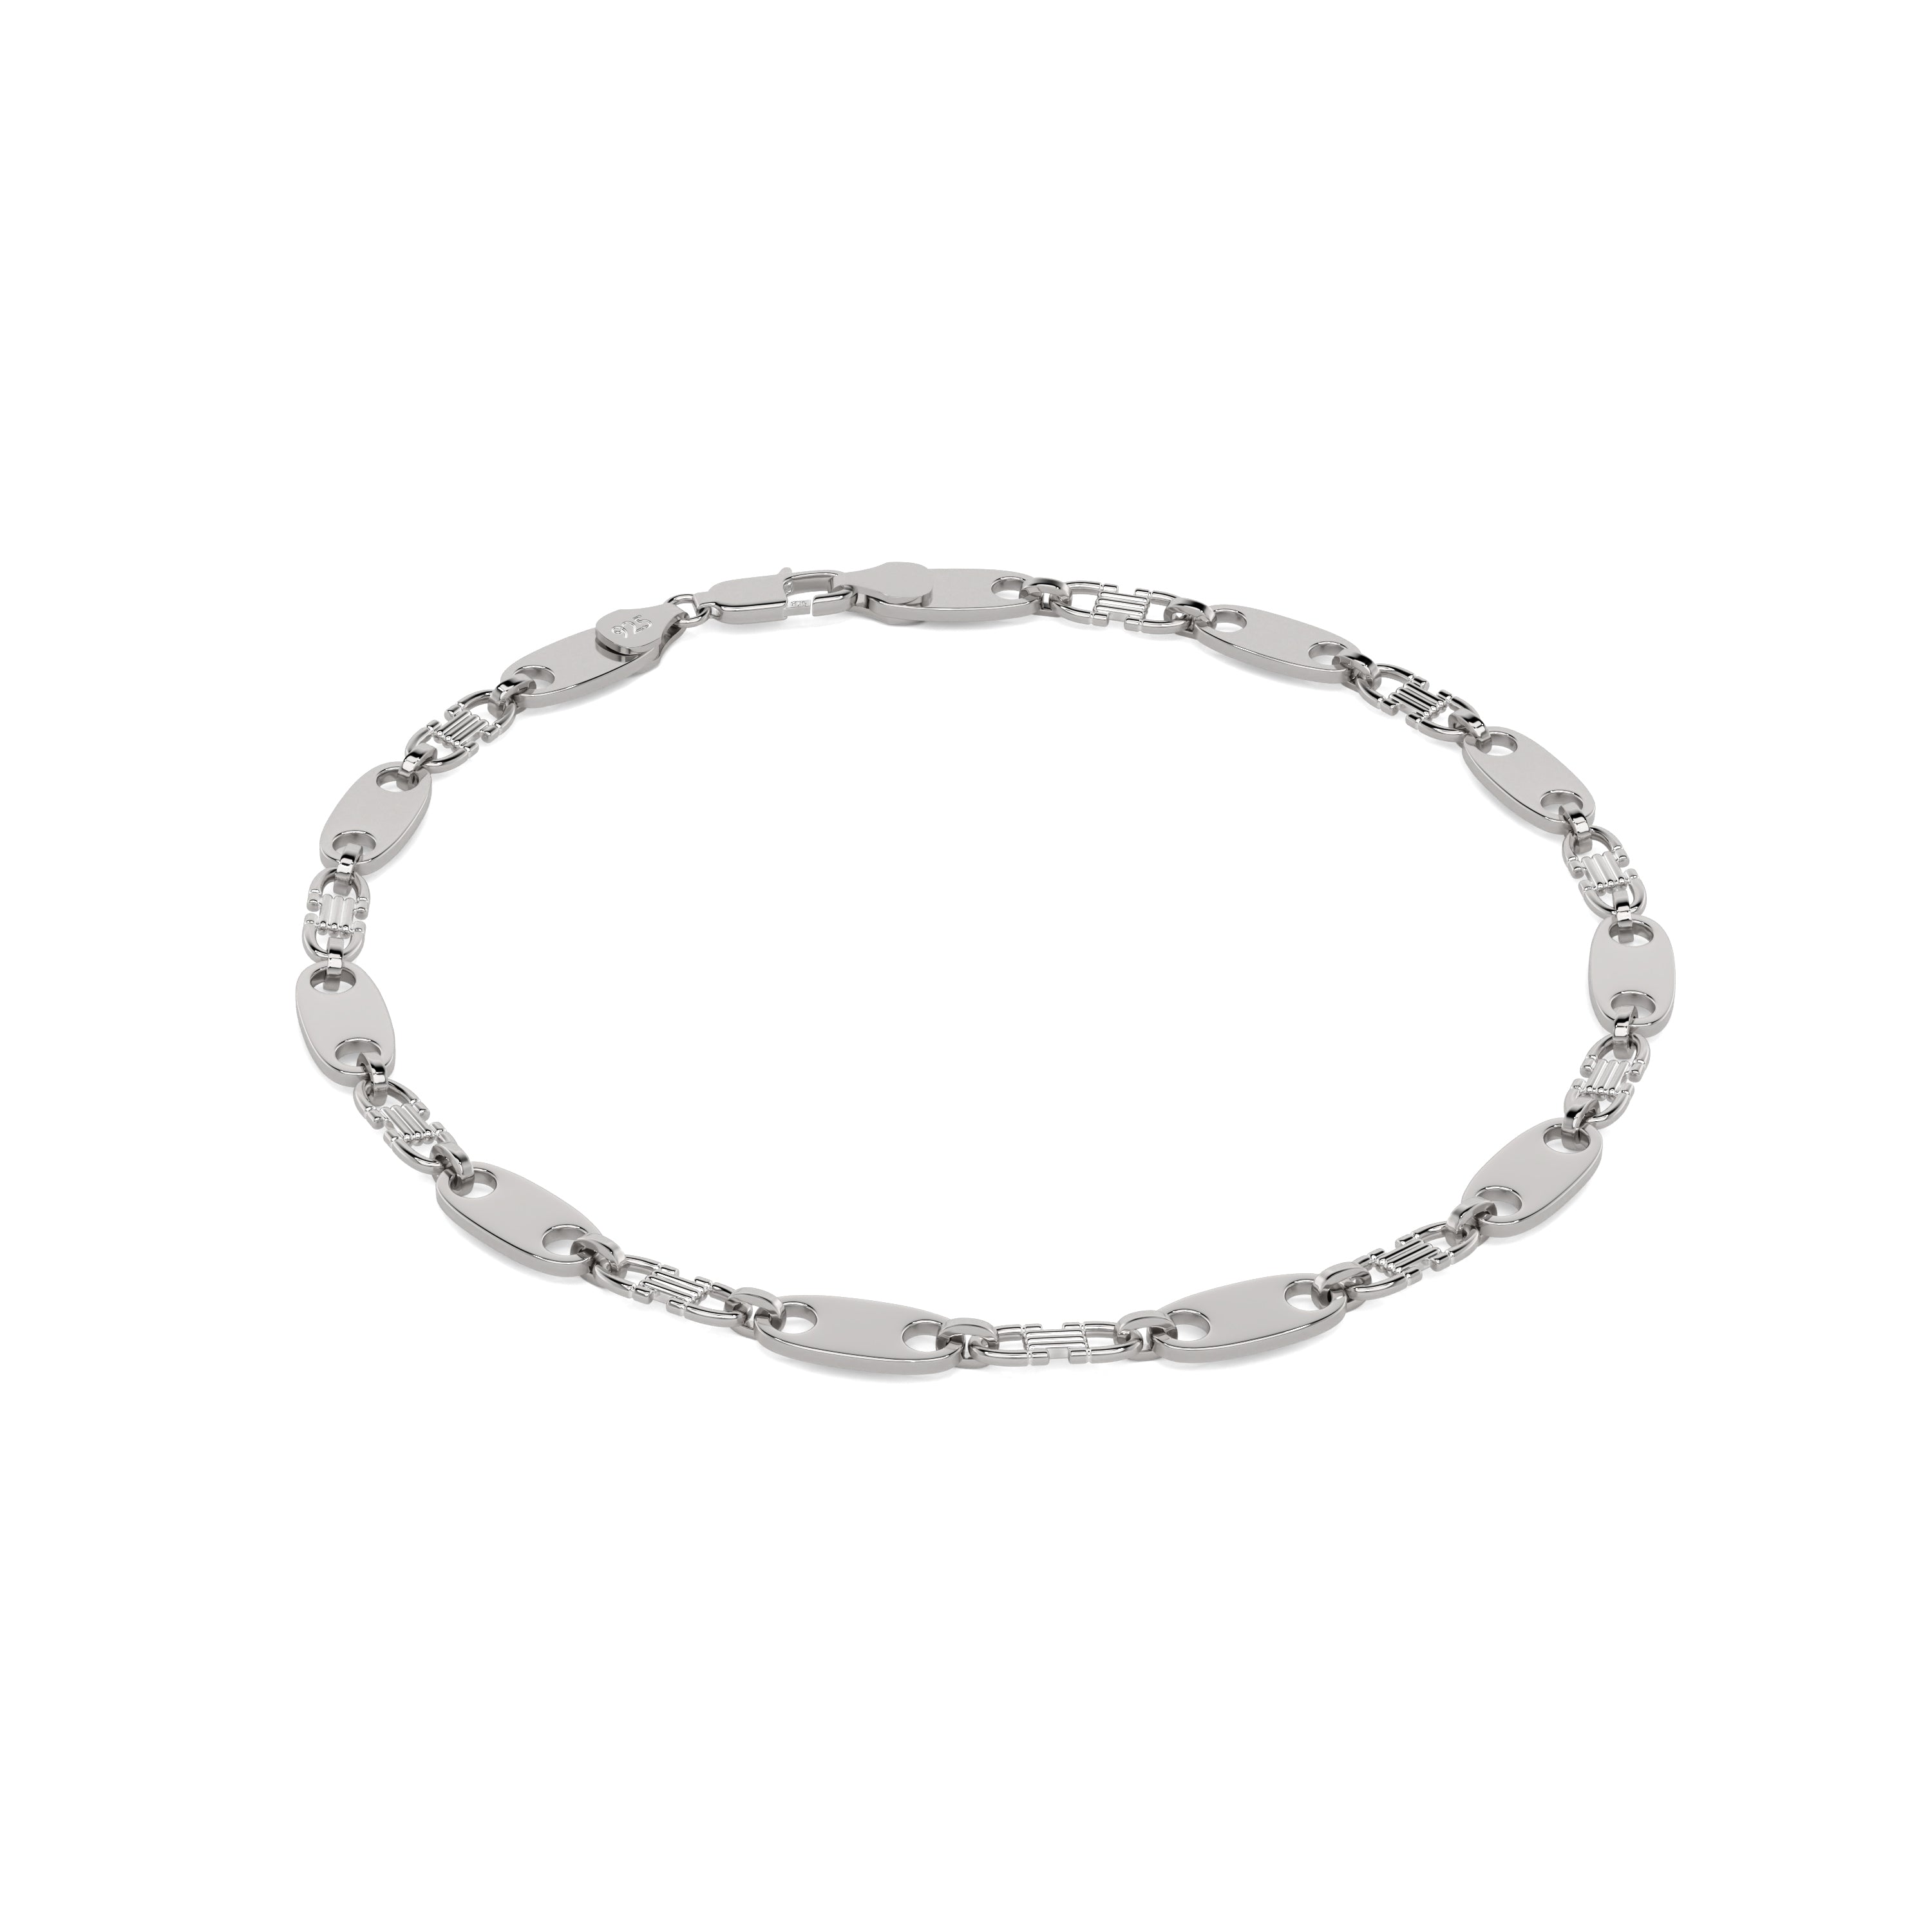 Plattenkette aus Silber 925 🥈 bestehend aus Armband & Halskette als S